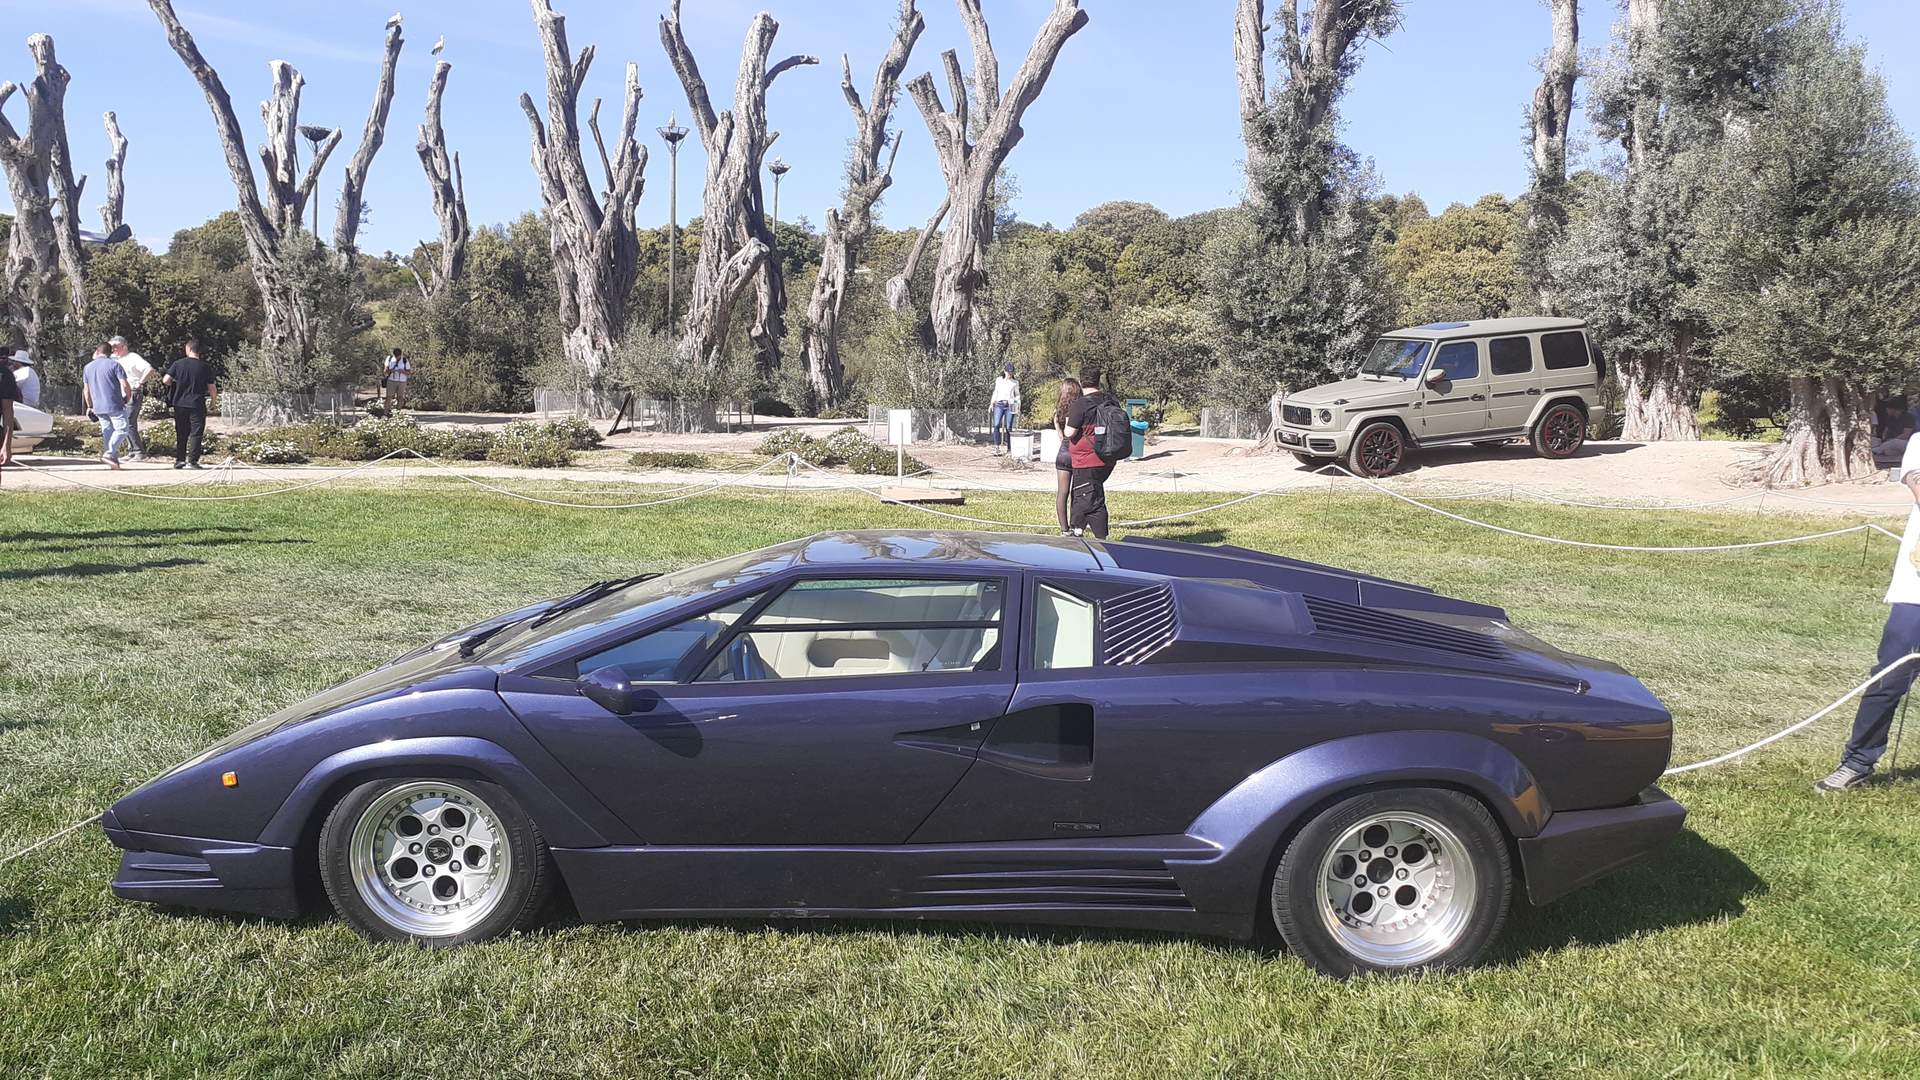 Muy futuristas las líneas del Lamborghini Countach 25 Aniversario de 1988. Monta el motor V12 Lamborghini de 5,2 litros (455 CV).